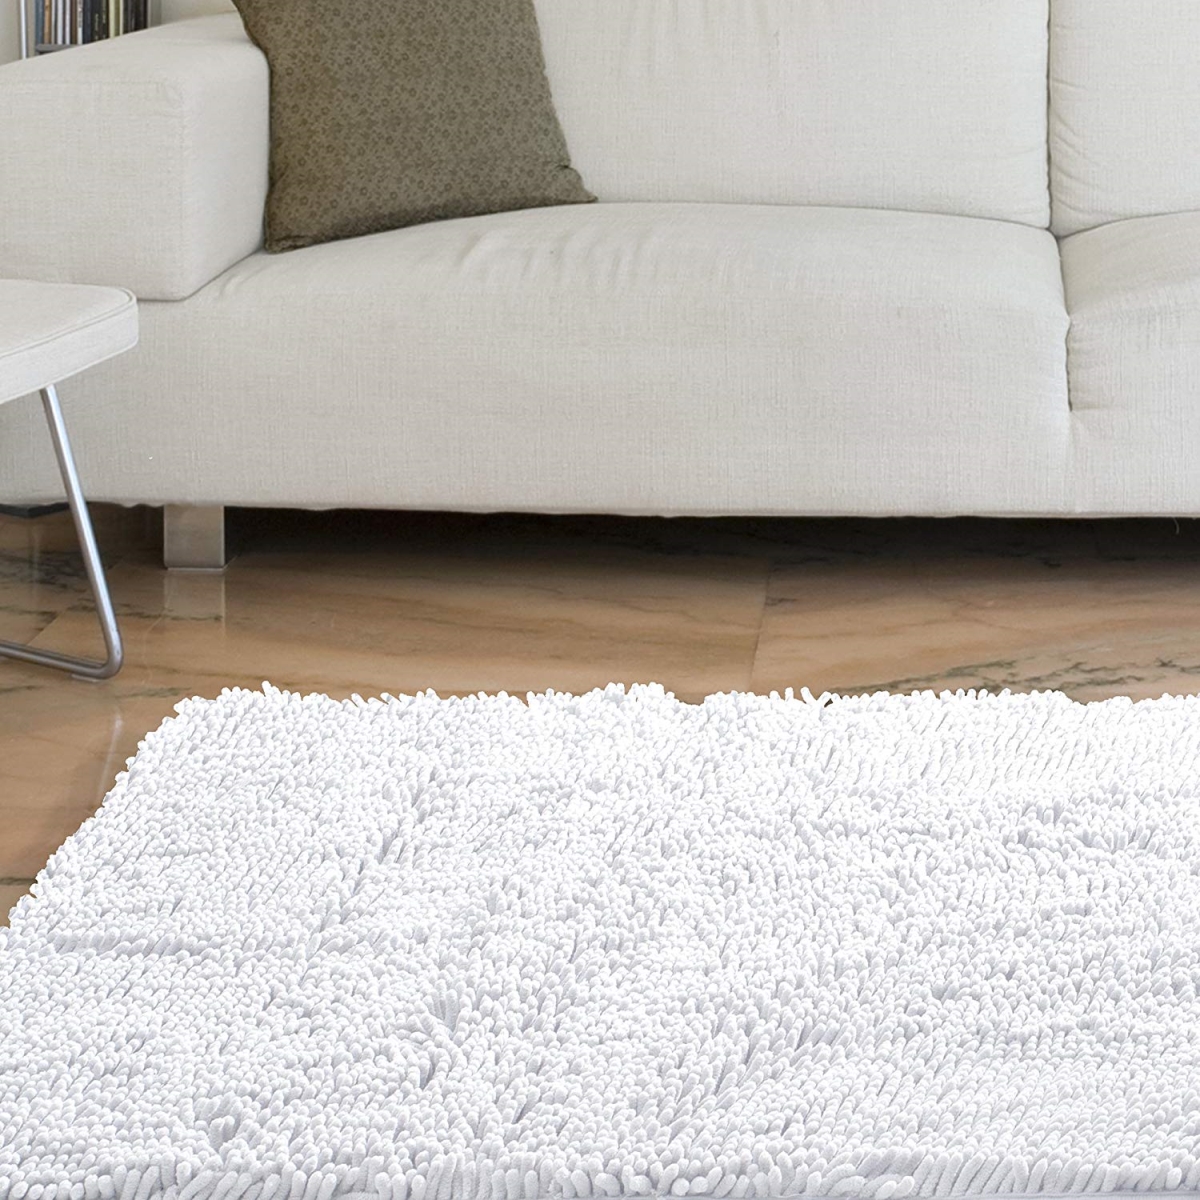 67a-00724 High Pile Shag Rug Carpet, 21 X 36 In. - White